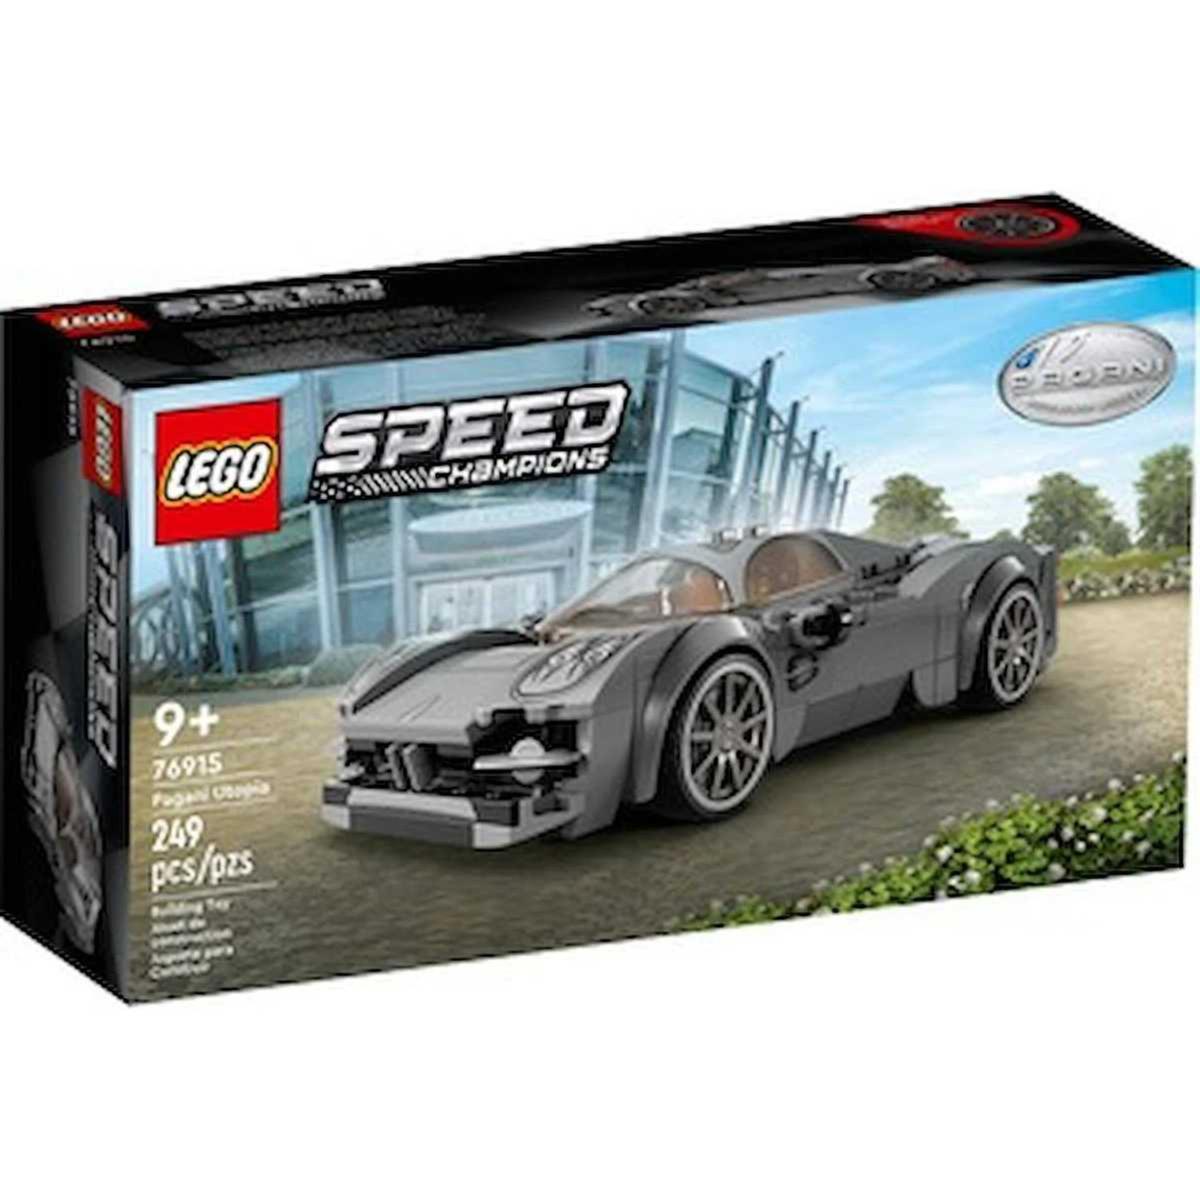 LEGO - Maqueta de coche deportivo Speed Champions Porsche 963 para